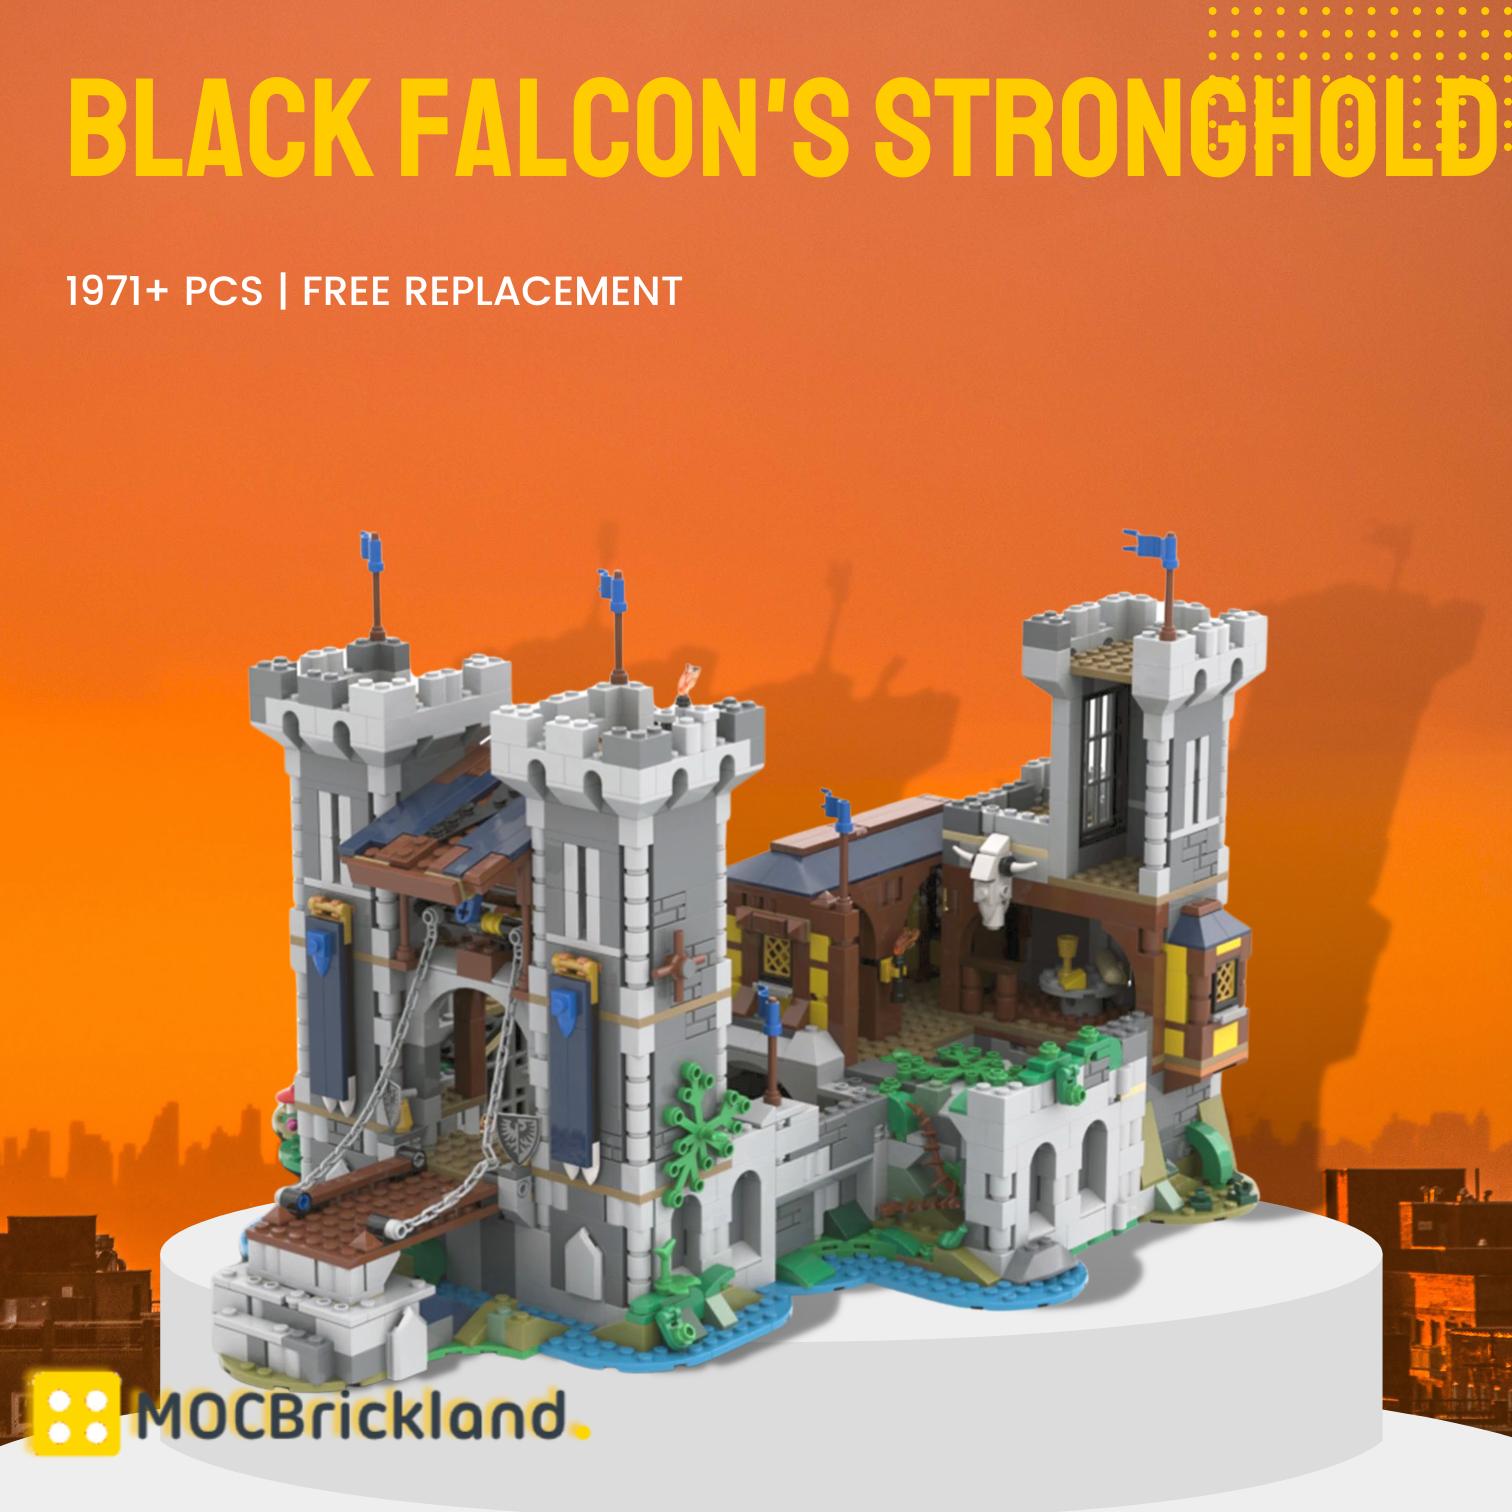 Black Falcon's Stronghold (BUNDLE) 31120-1 Alt. Build MOC-116798 Creator With 1971PCS